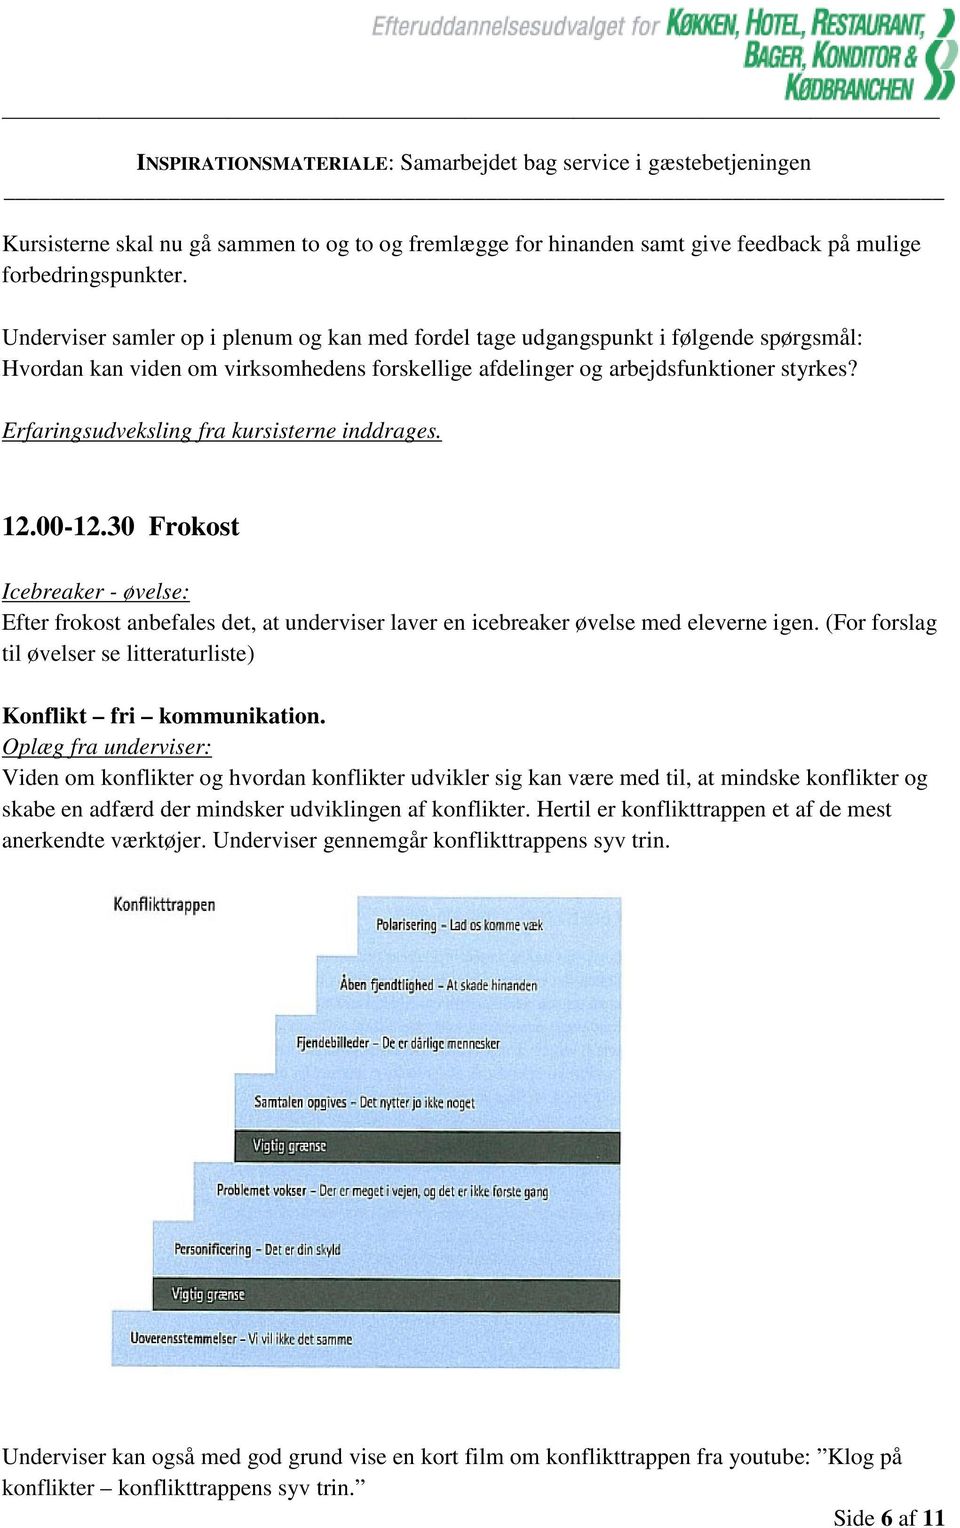 Erfaringsudveksling fra kursisterne inddrages. 12.00-12.30 Frokost Icebreaker - øvelse: Efter frokost anbefales det, at underviser laver en icebreaker øvelse med eleverne igen.